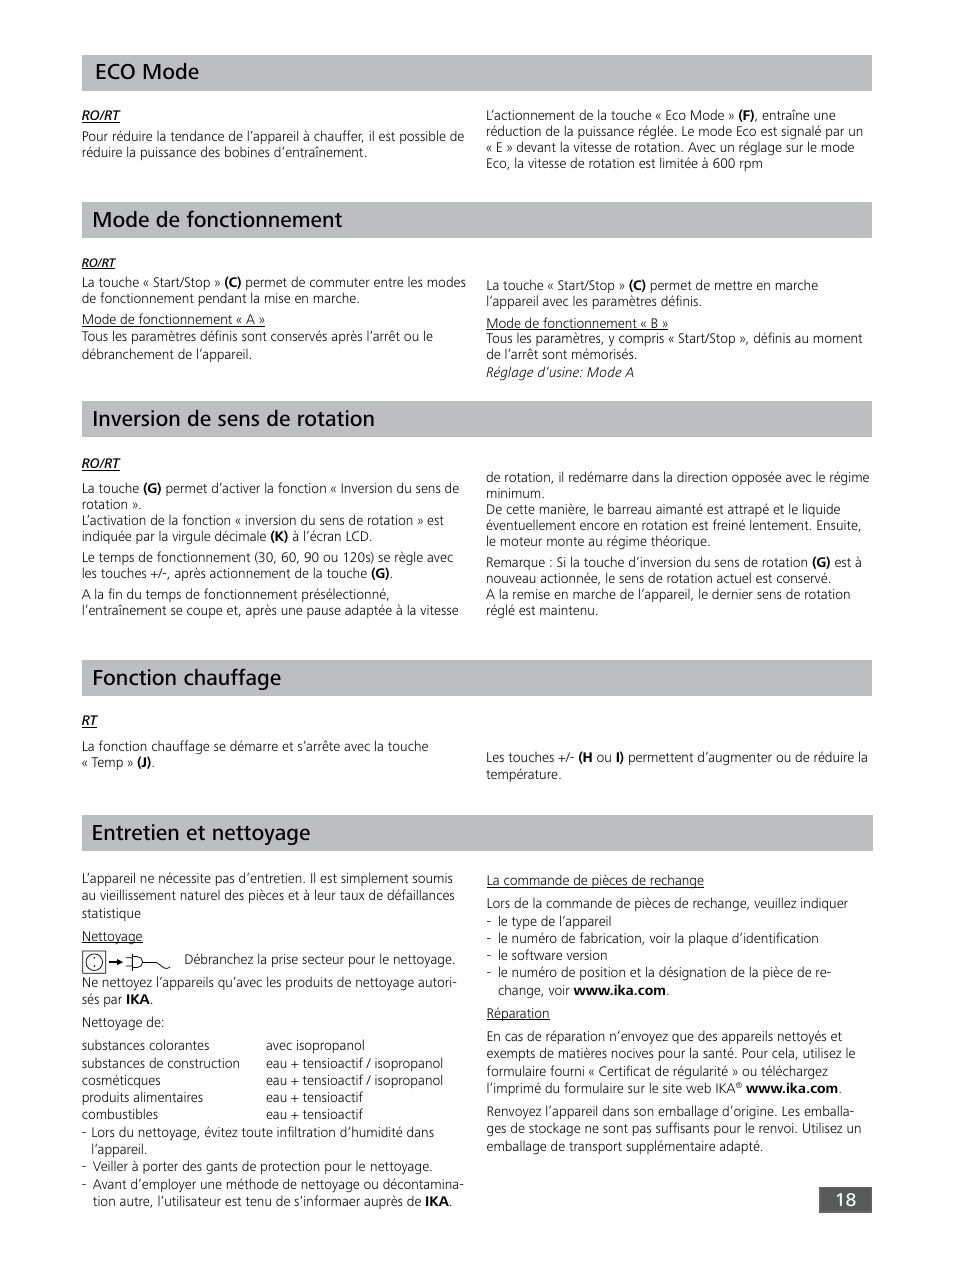 Fonction chauffage eco mode, Inversion de sens de rotation, Mode de fonctionnement | Entretien et nettoyage | IKA RO 15 User Manual | Page 18 / 40